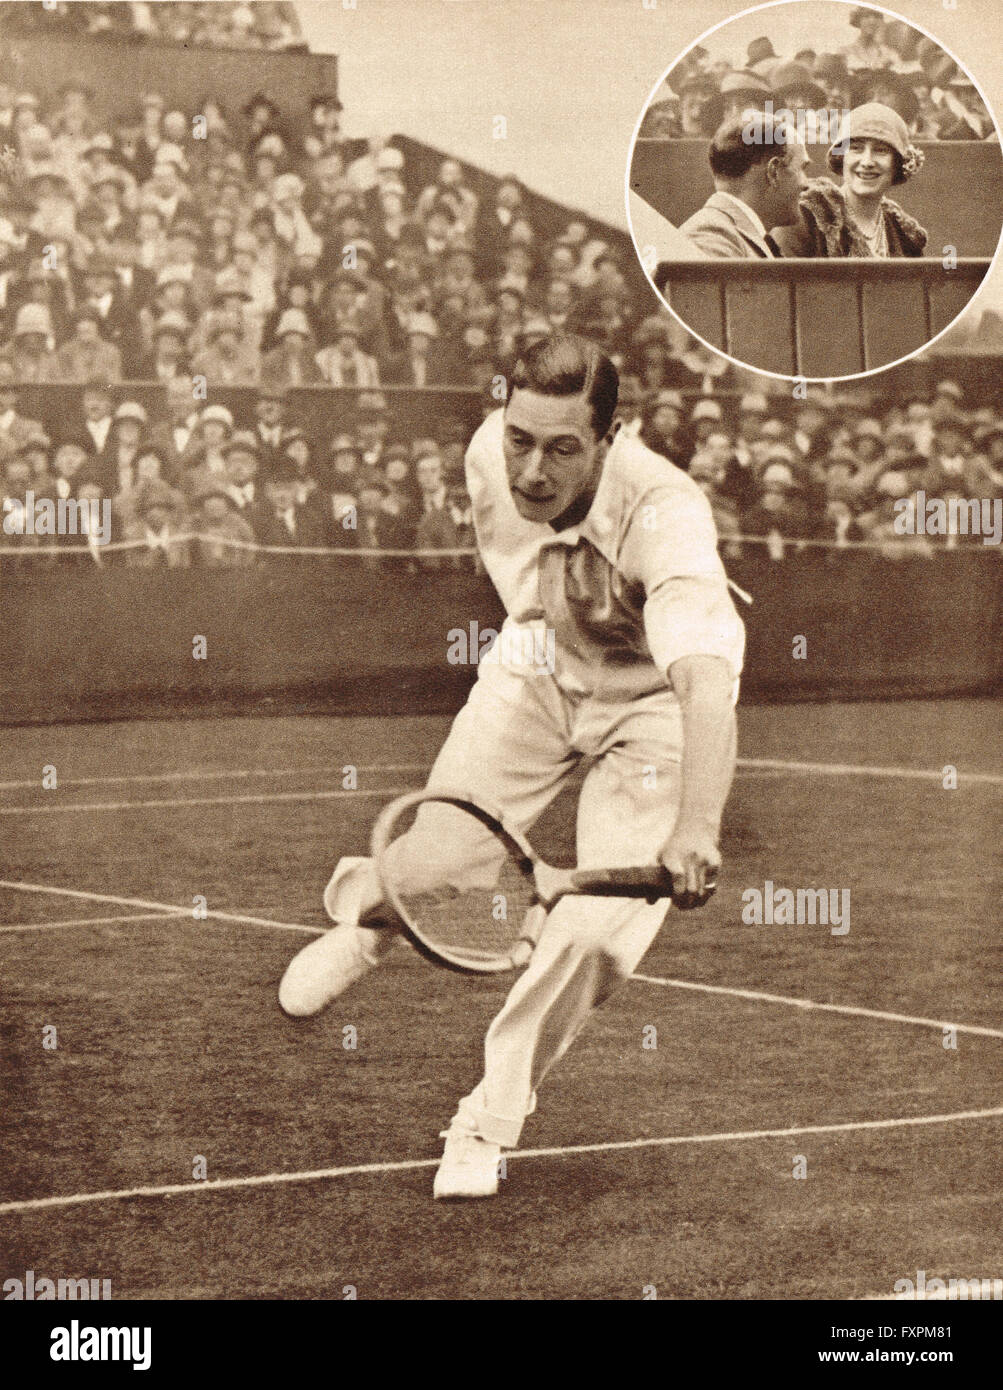 Prinz Albert, der zukünftige König George VI spielen in der Herren Doppel  bei den Meisterschaften in Wimbledon im Jahr 1926 Stockfotografie - Alamy